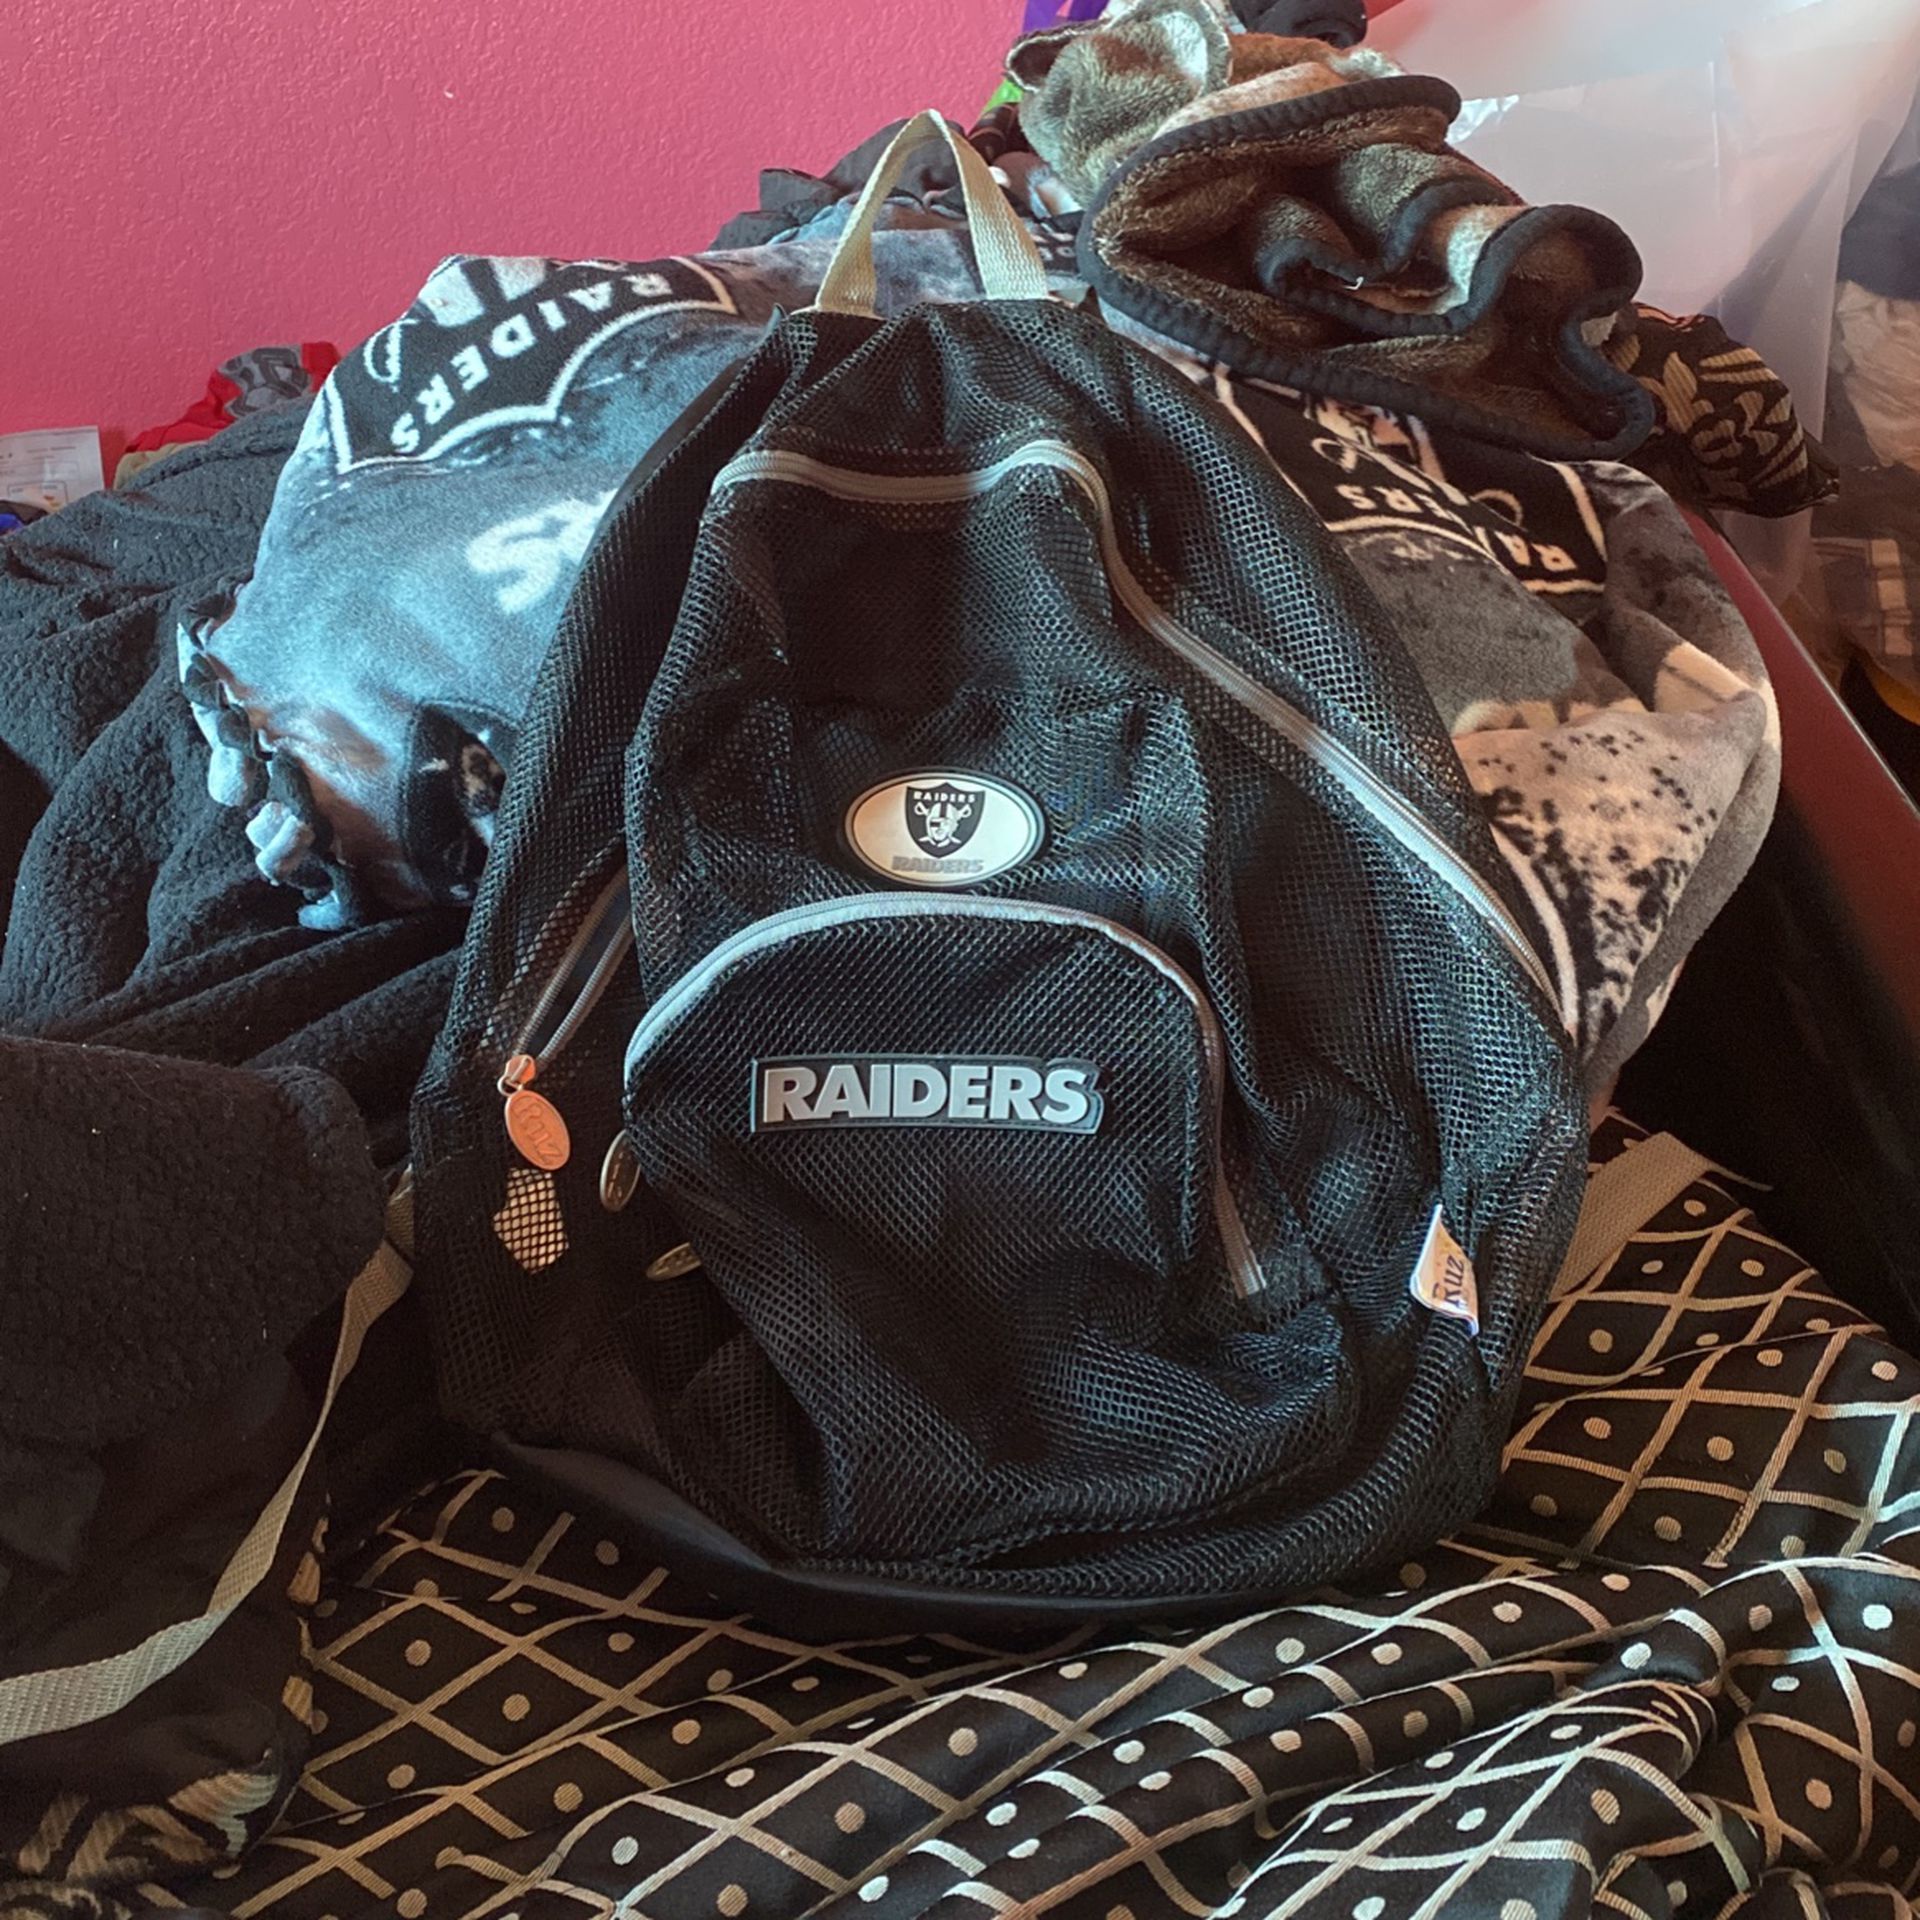 Raiders Mesh Semi-Transparent Backpack 